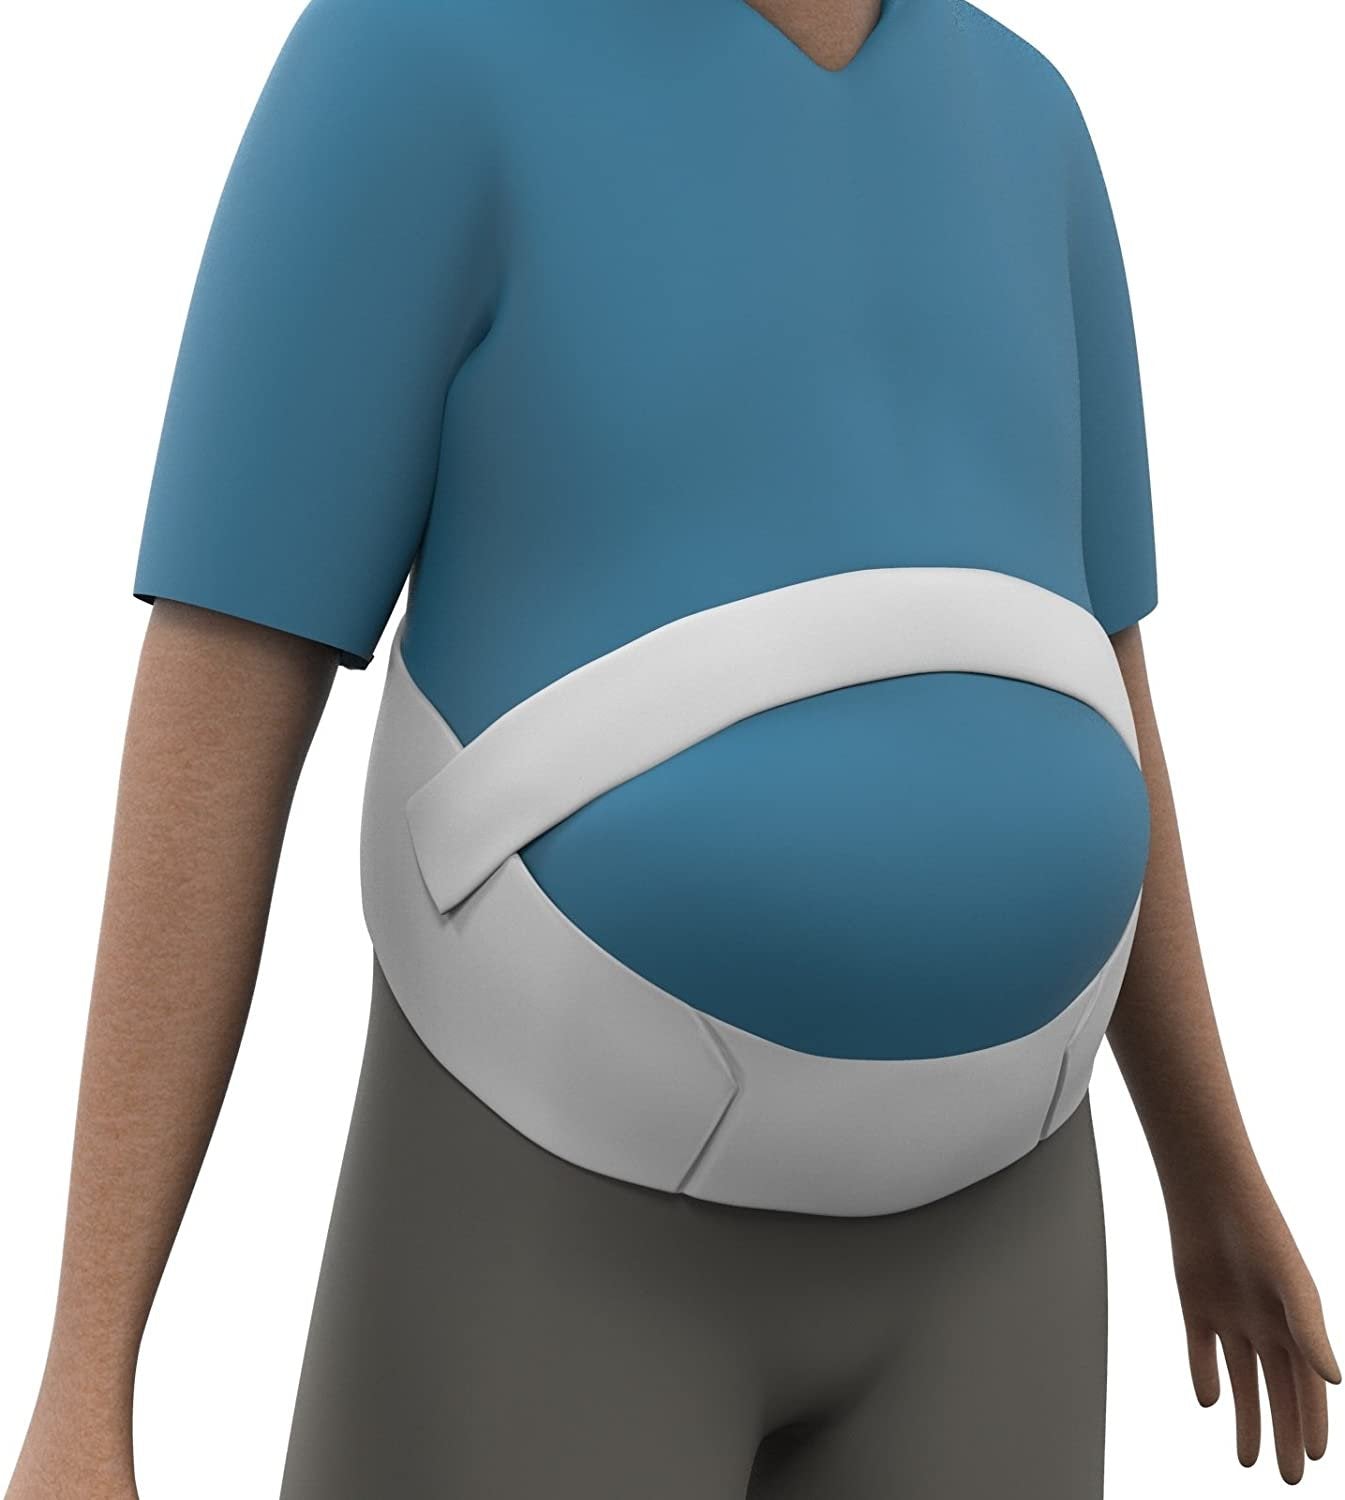 Obesity Belt - Belly Holder Abdominal Binder and Lower Back